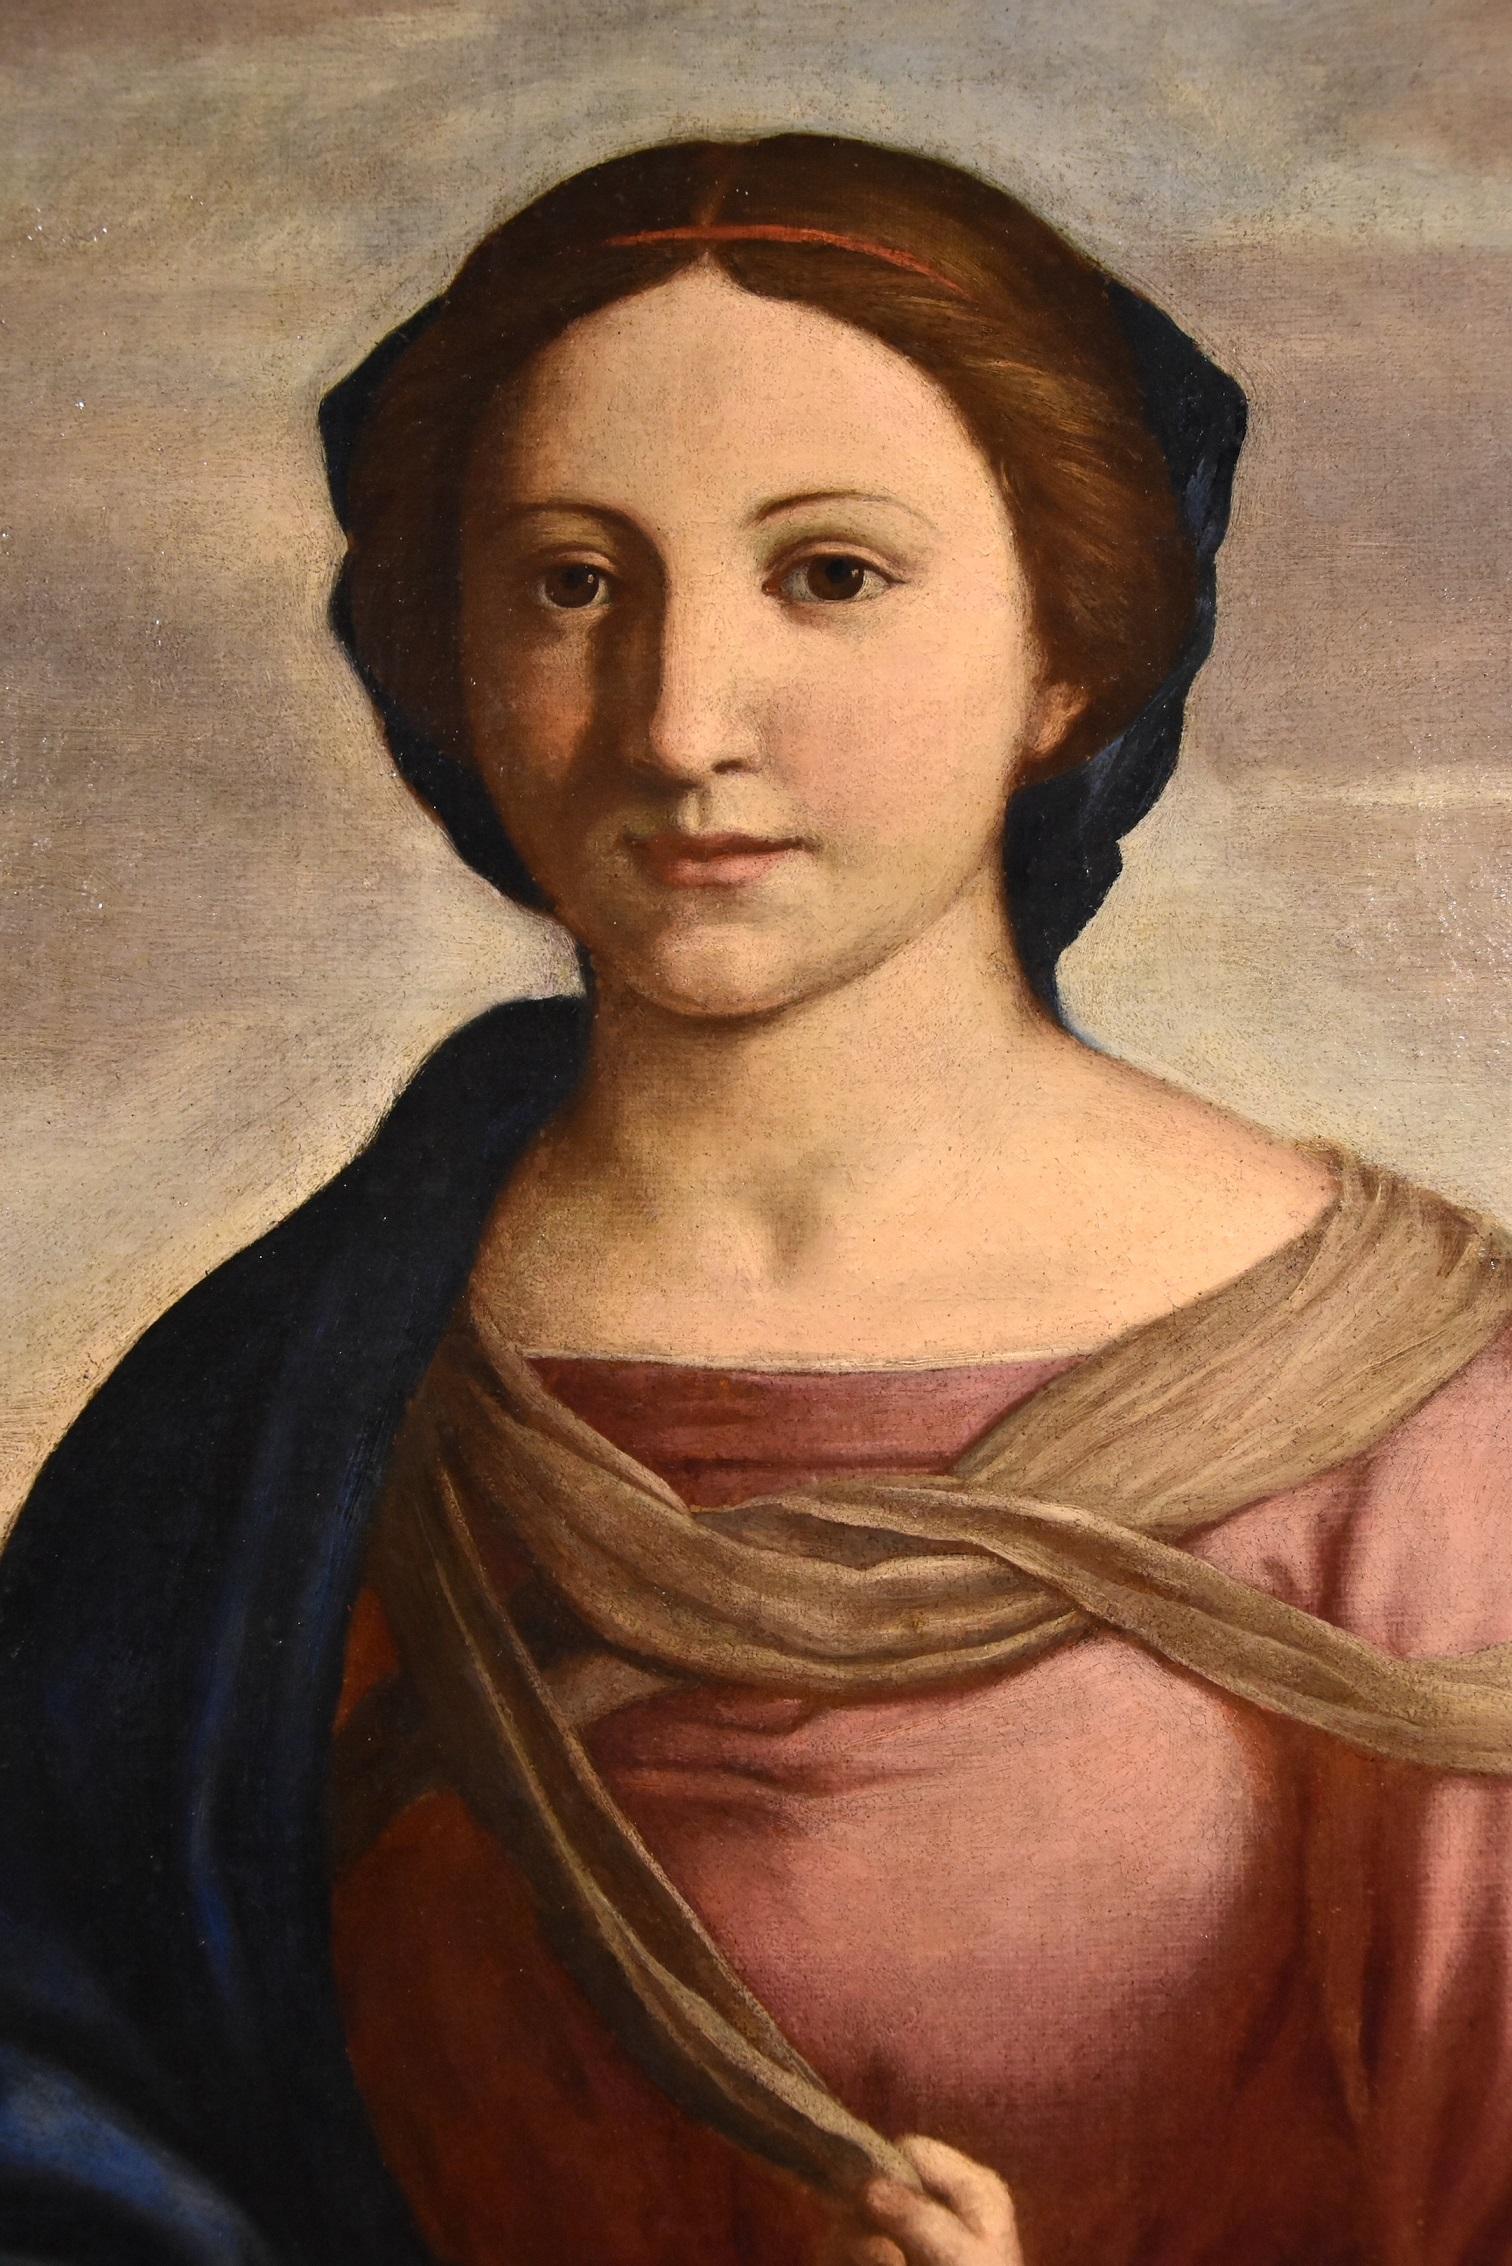 Salvi Virgin Madonna Paint Old master Oil on canvas 17th Century Raffaello Italy 8